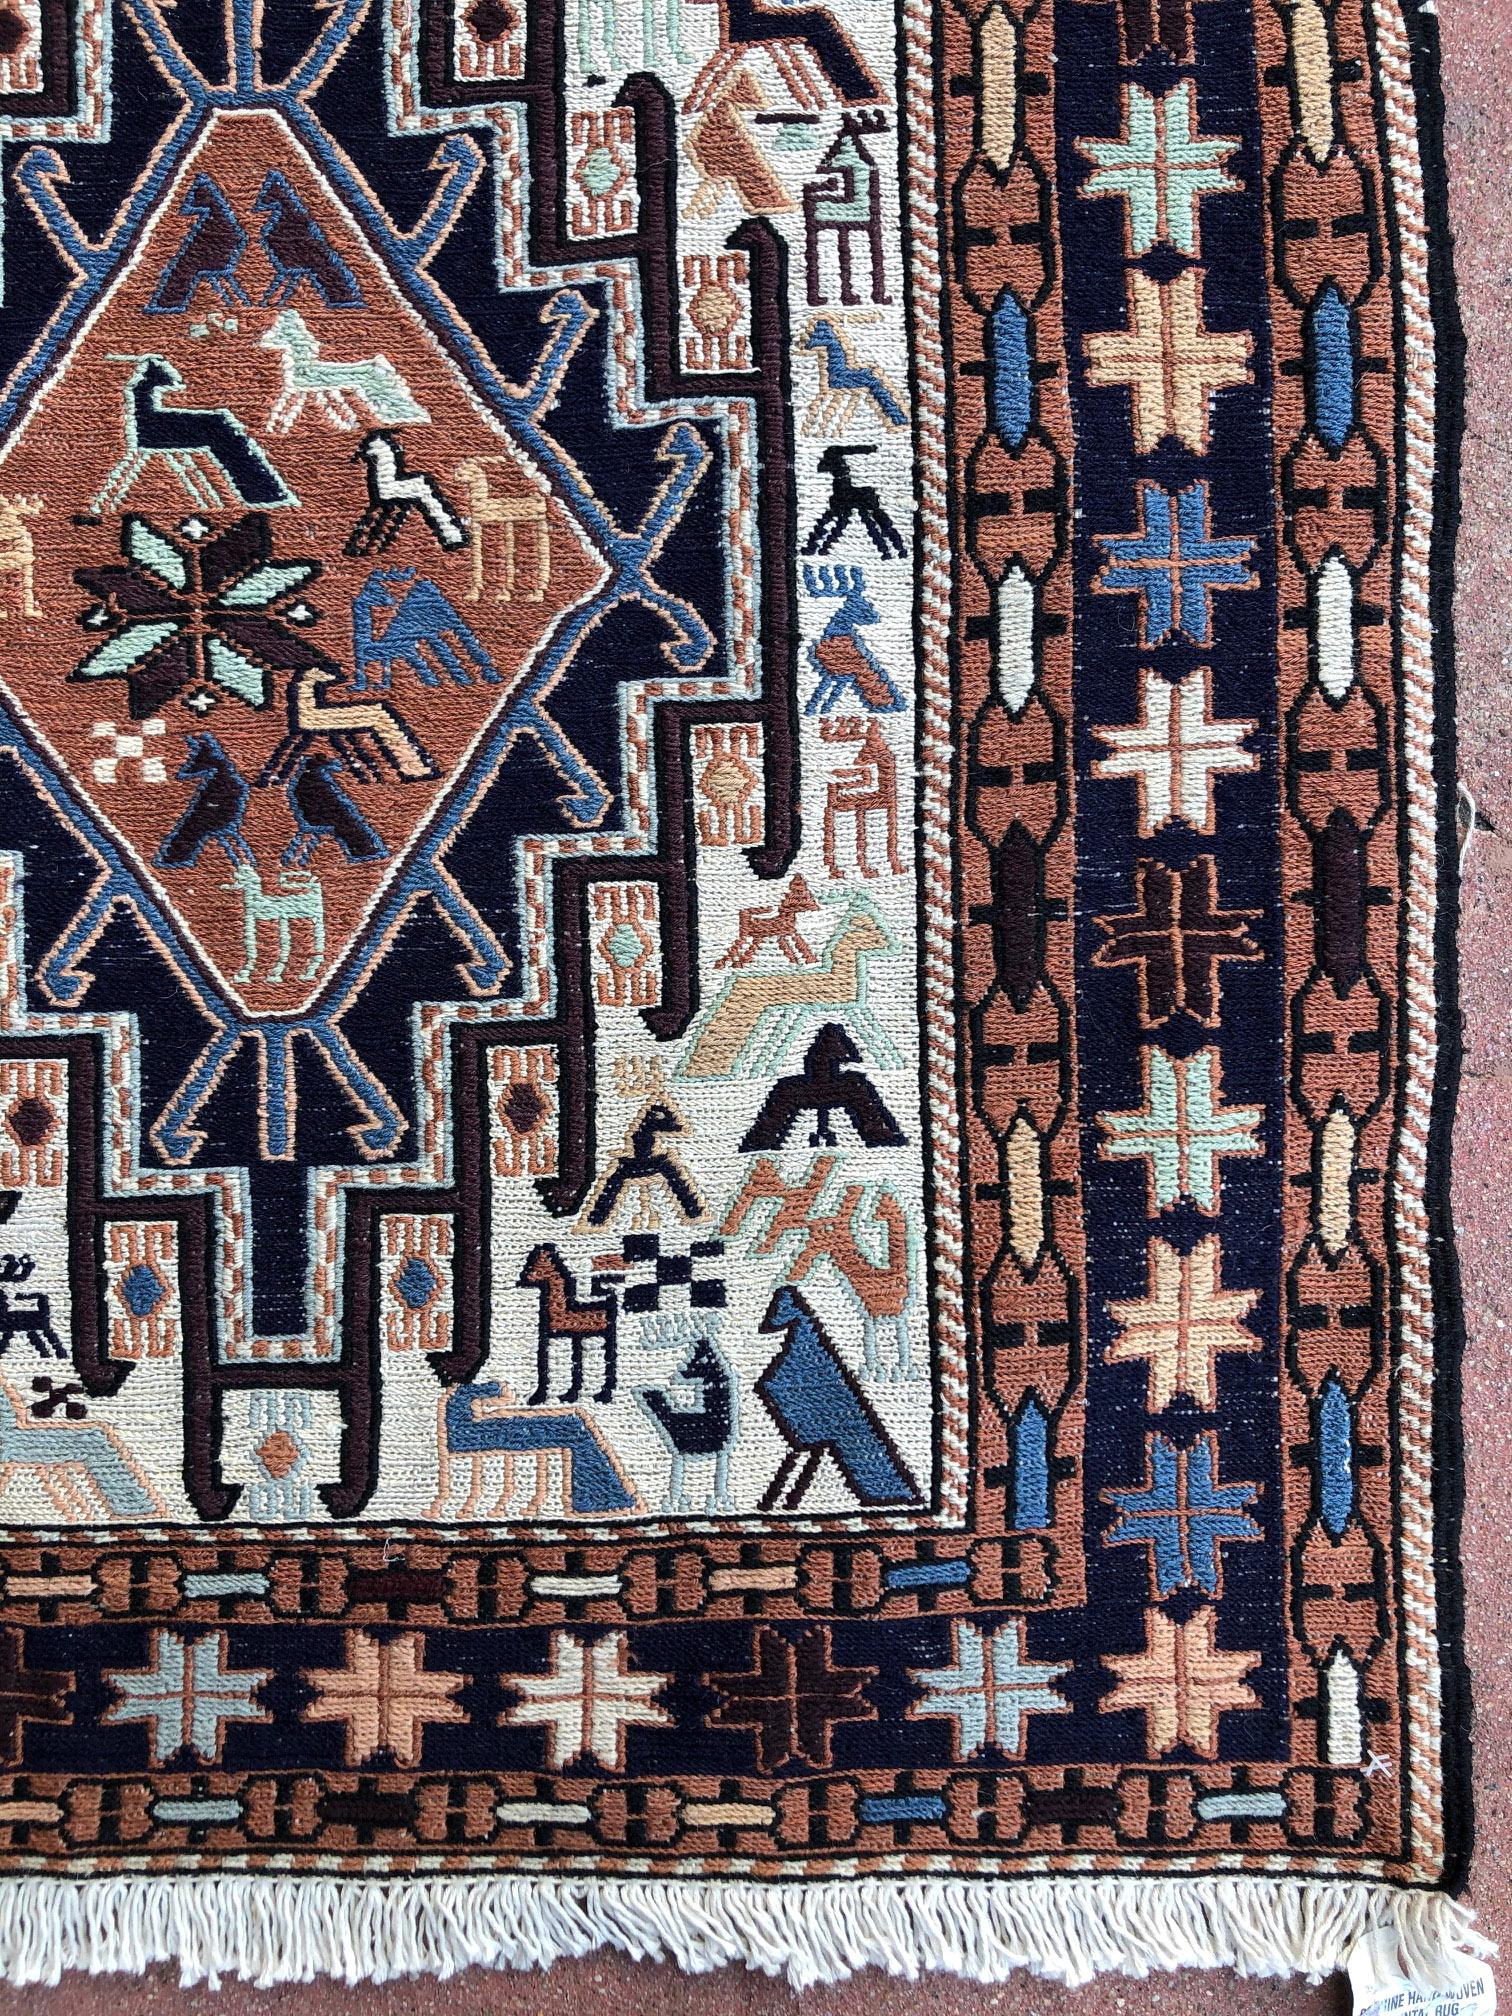 Contemporary Persian Sumak Multi-Color Tribal Animal Motif Kilim Rug For Sale